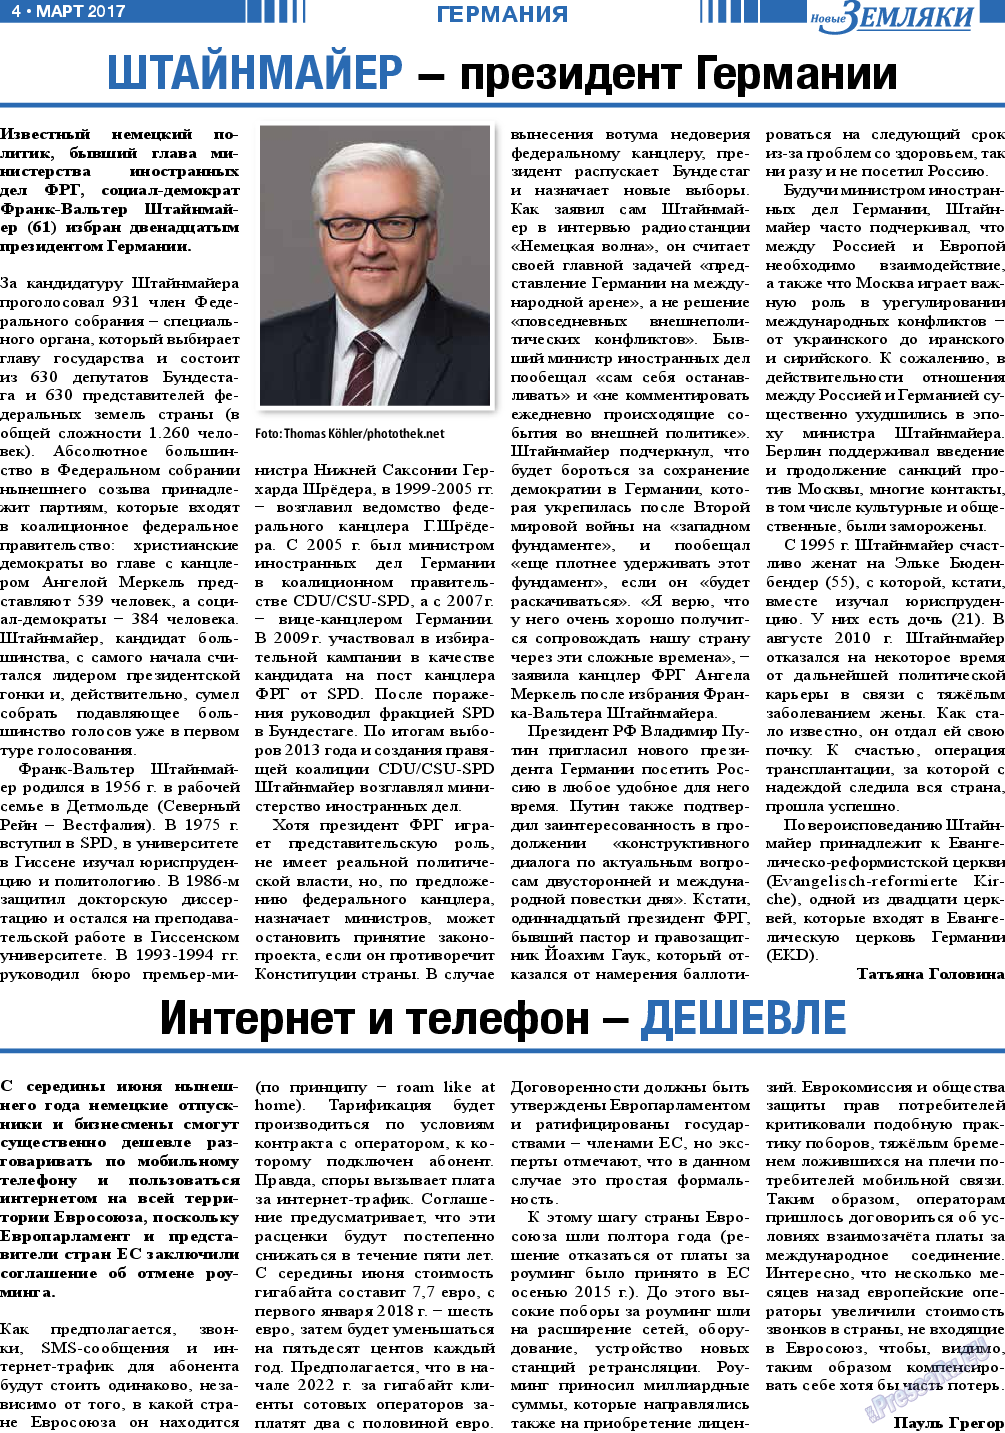 Новые Земляки, газета. 2017 №3 стр.4